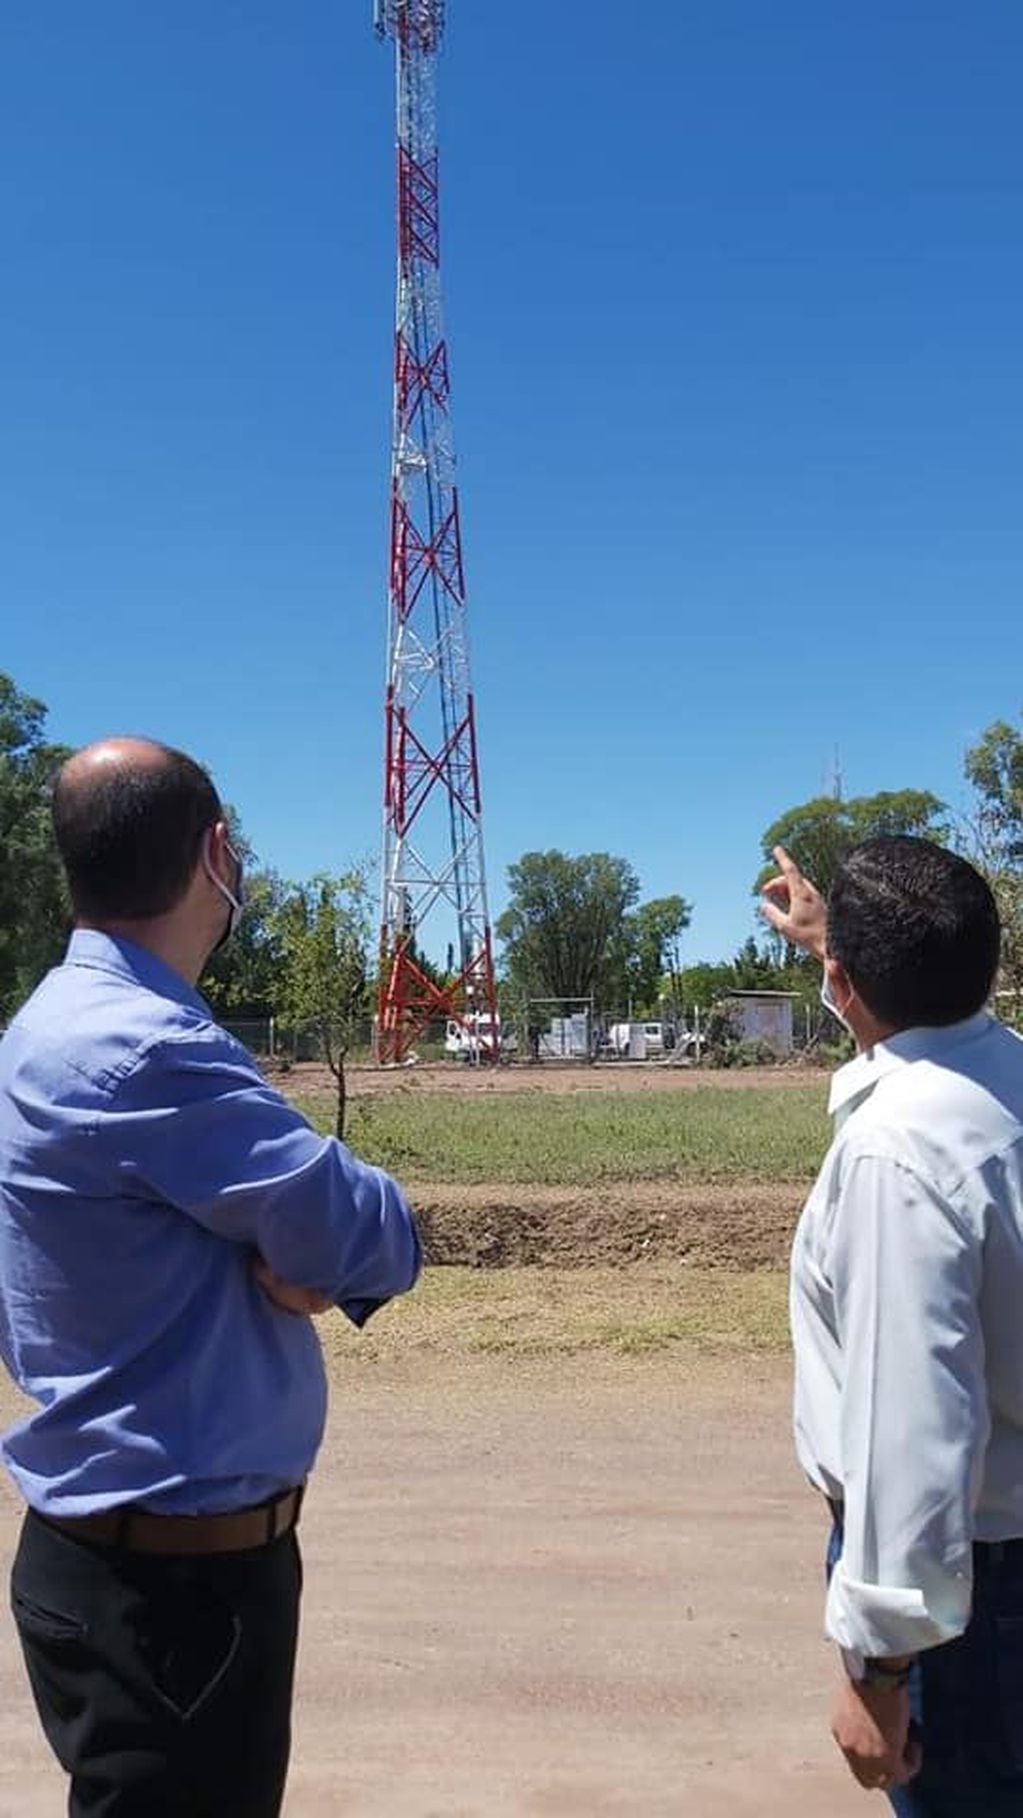 El distrito al sur de Alvear contará con servicio de internet por fibra óptica y telefonía 4G lo que beneficiará también a áreas rurales de San Rafael.